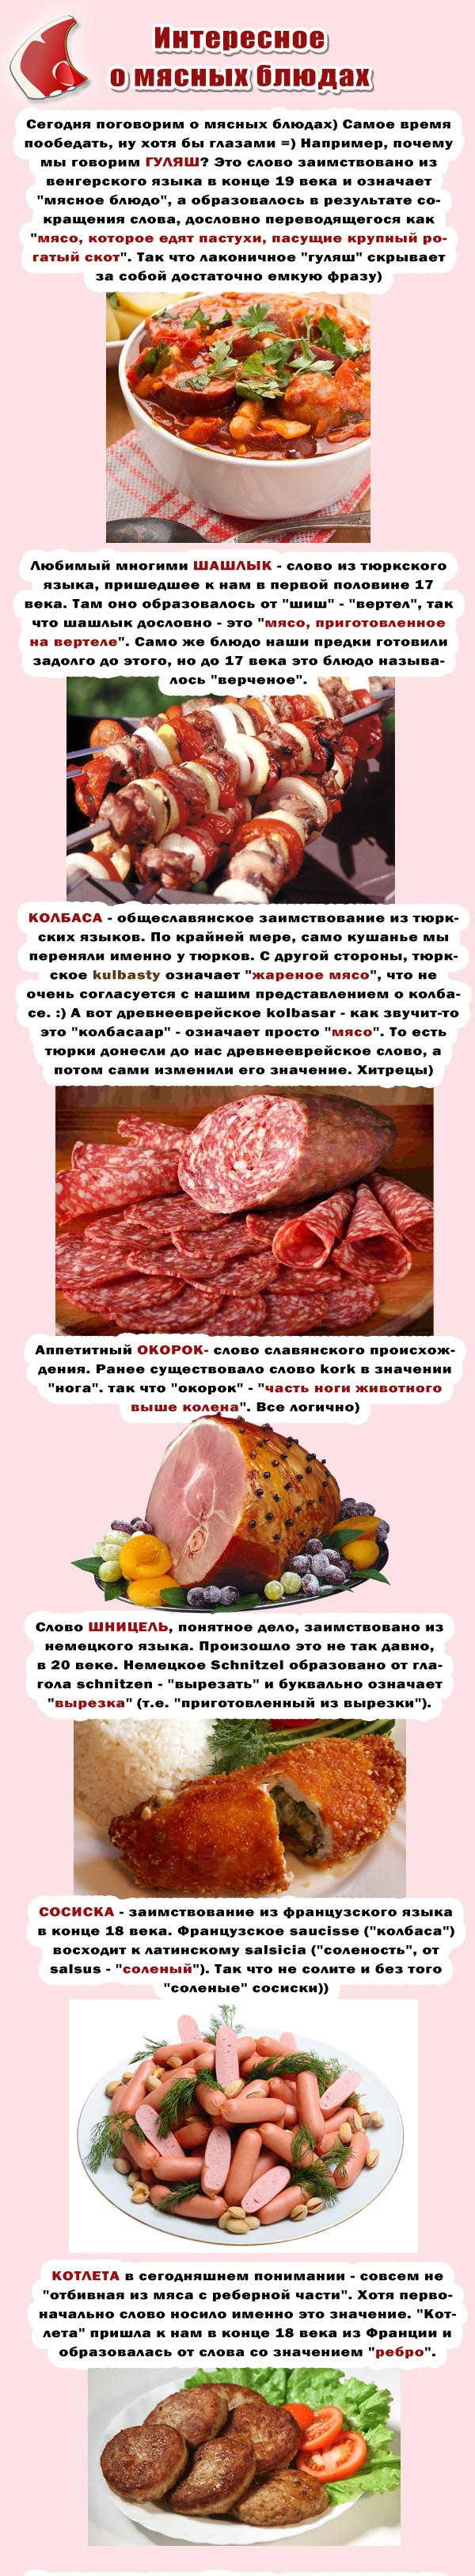 Мясо и язык